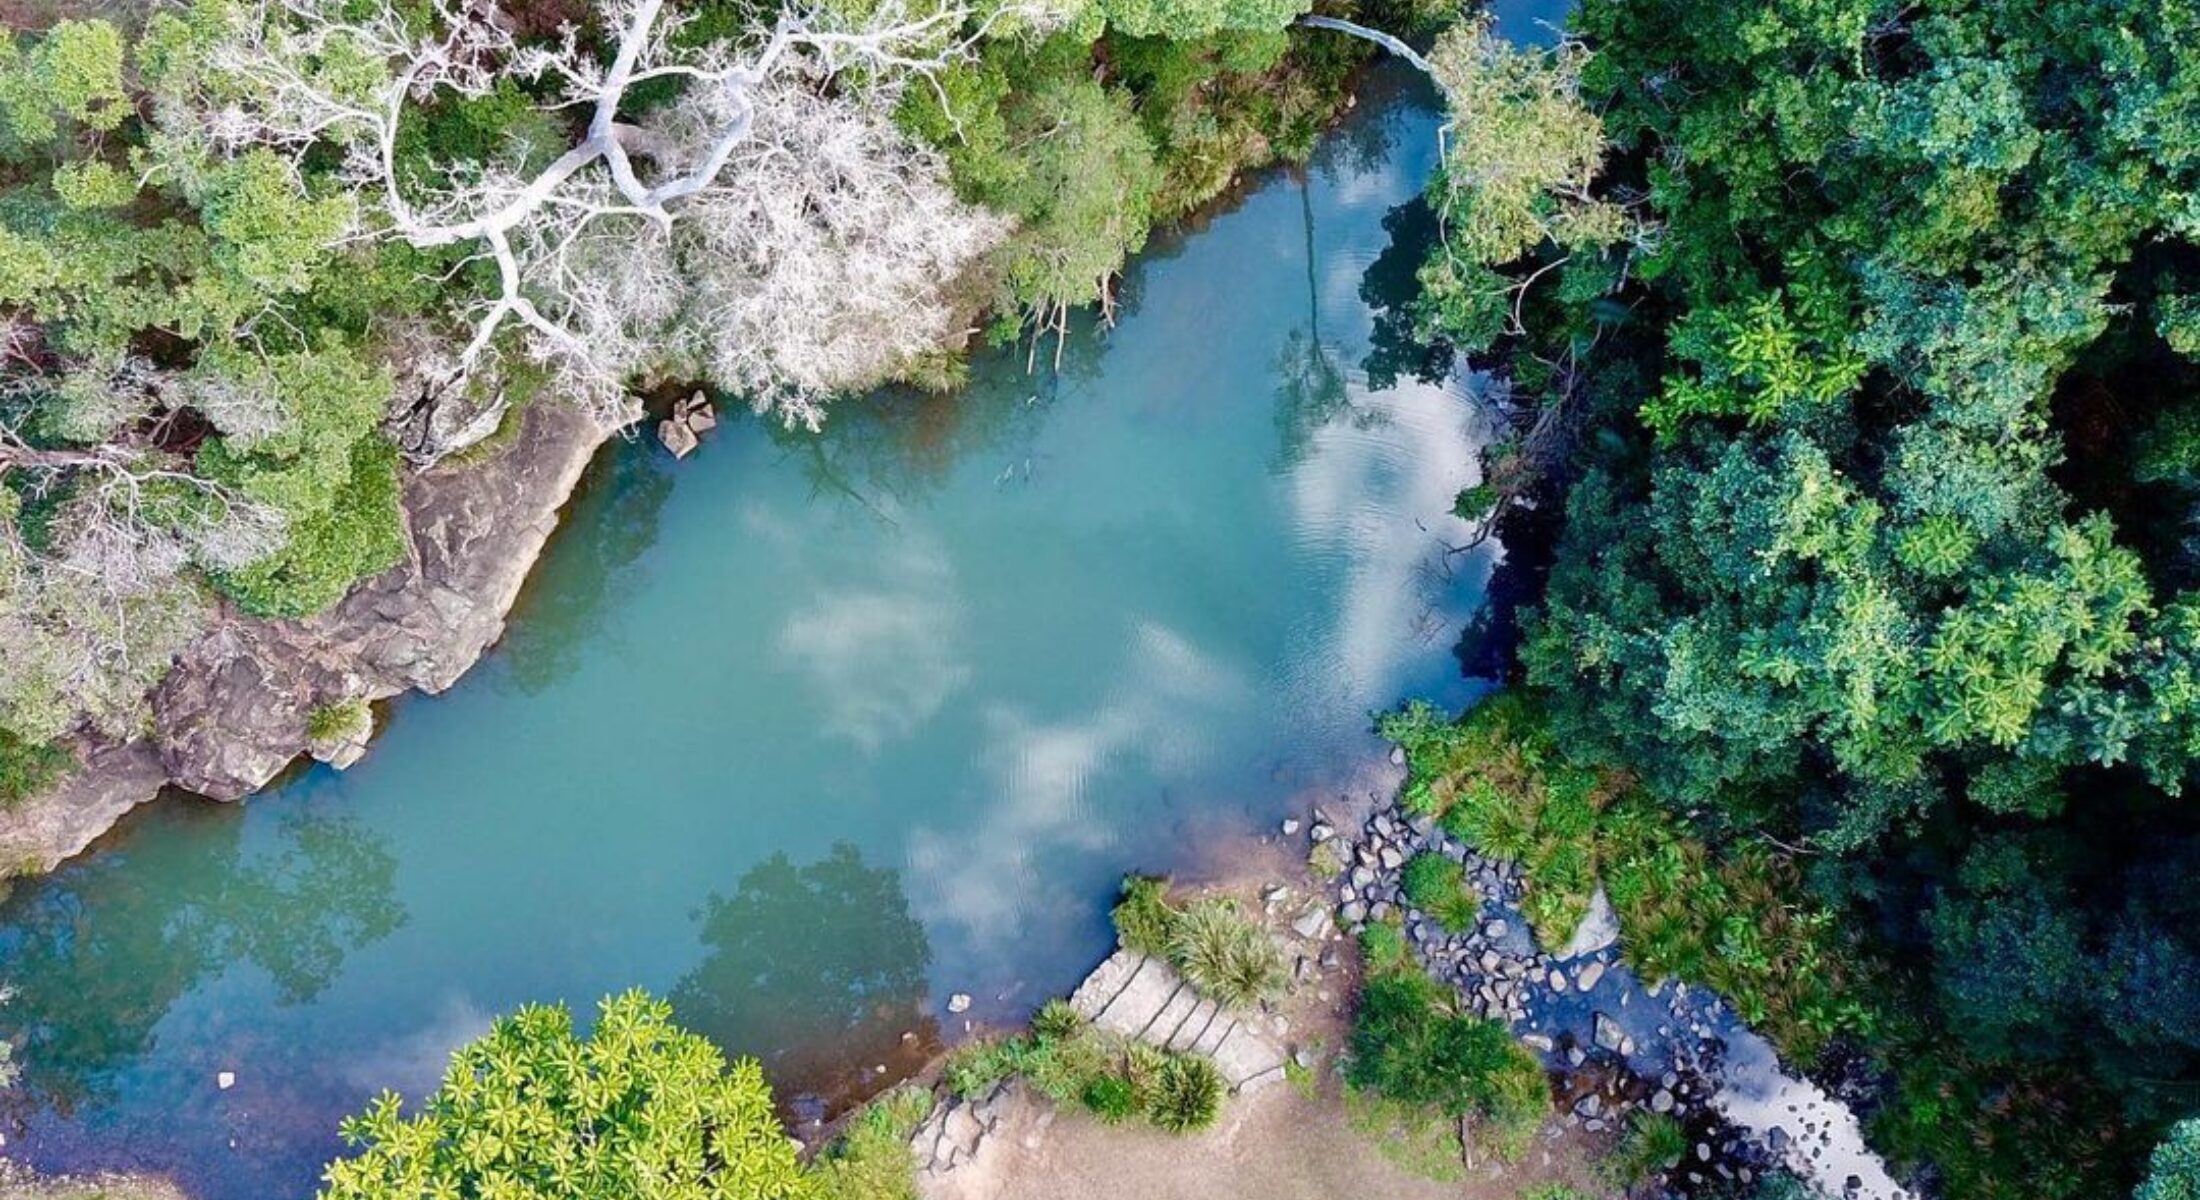 Stony Creek waterholes near Brisbane Moreton Bay Region must credit kingjman 23